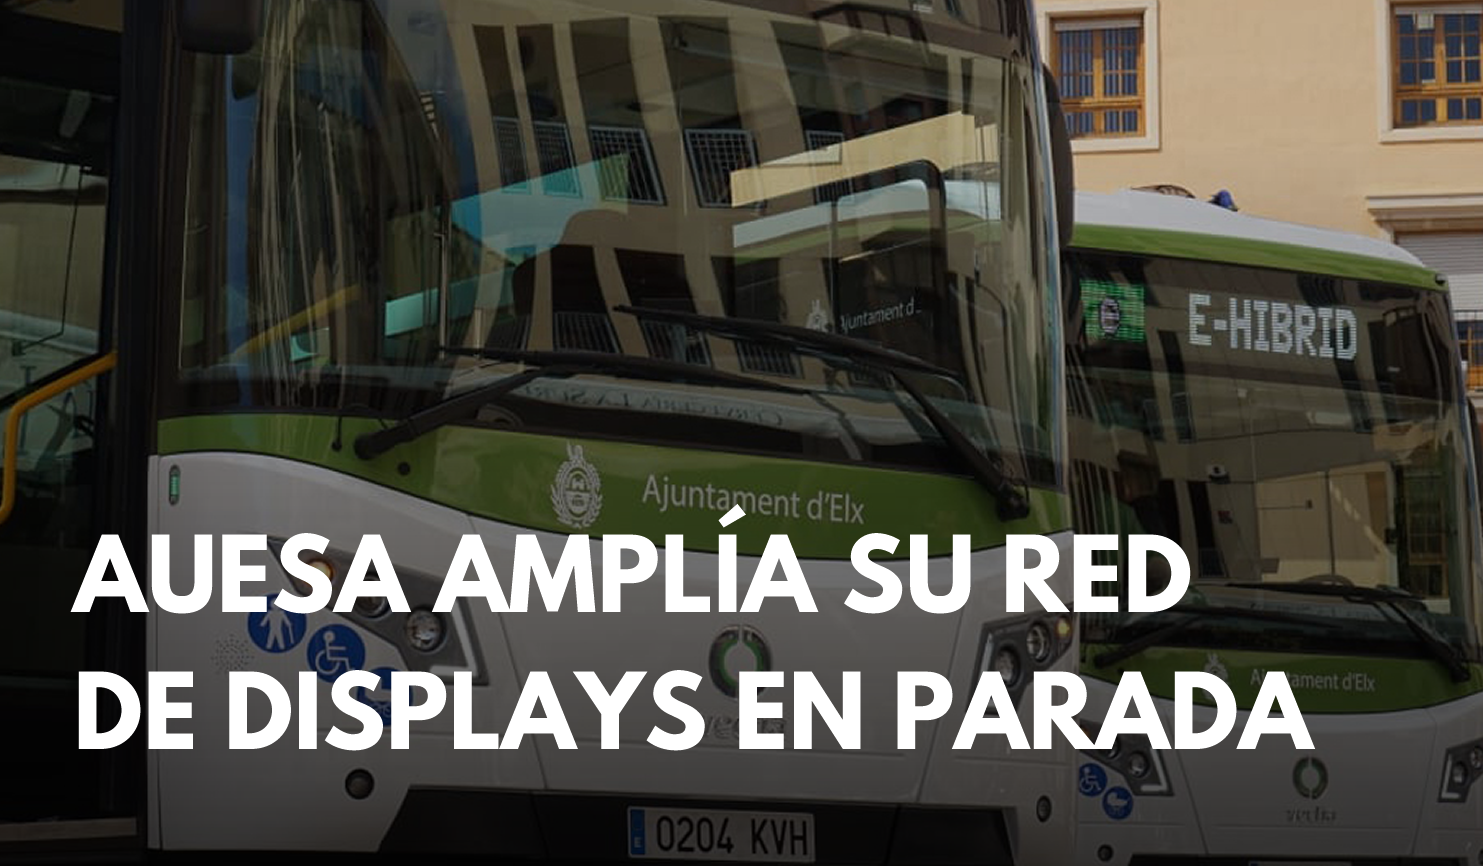 Autobuses de Elche amplía su red de displays en paradas